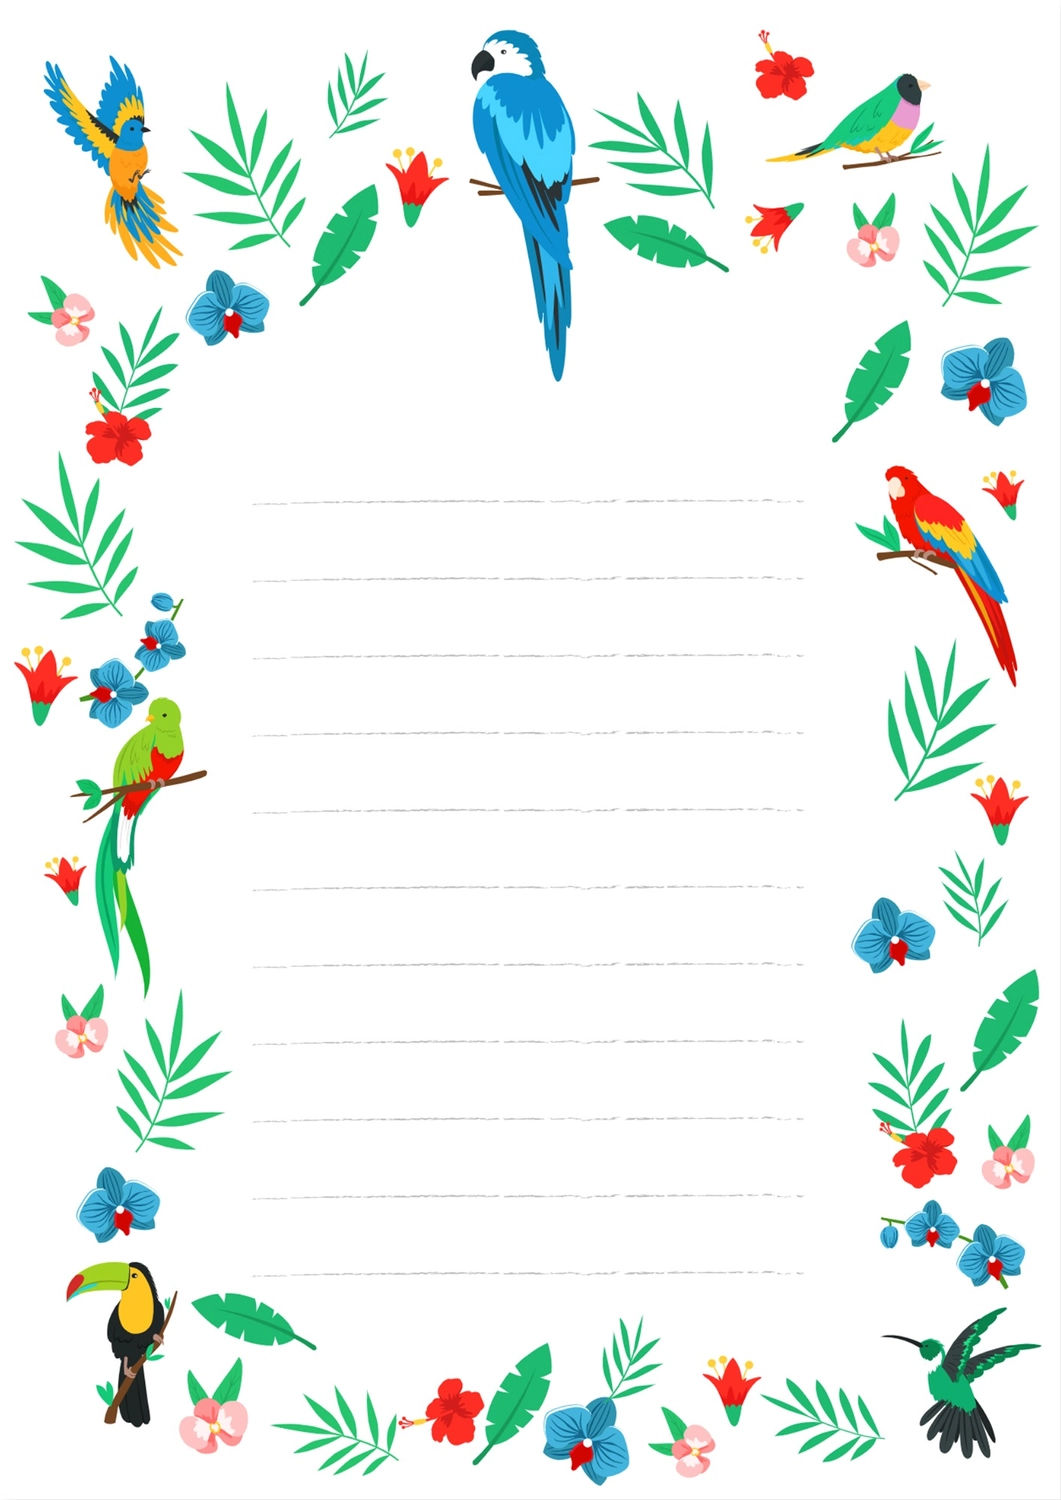 青い鳥の便箋, 편지, 편지, 편지, 편지지 템플릿